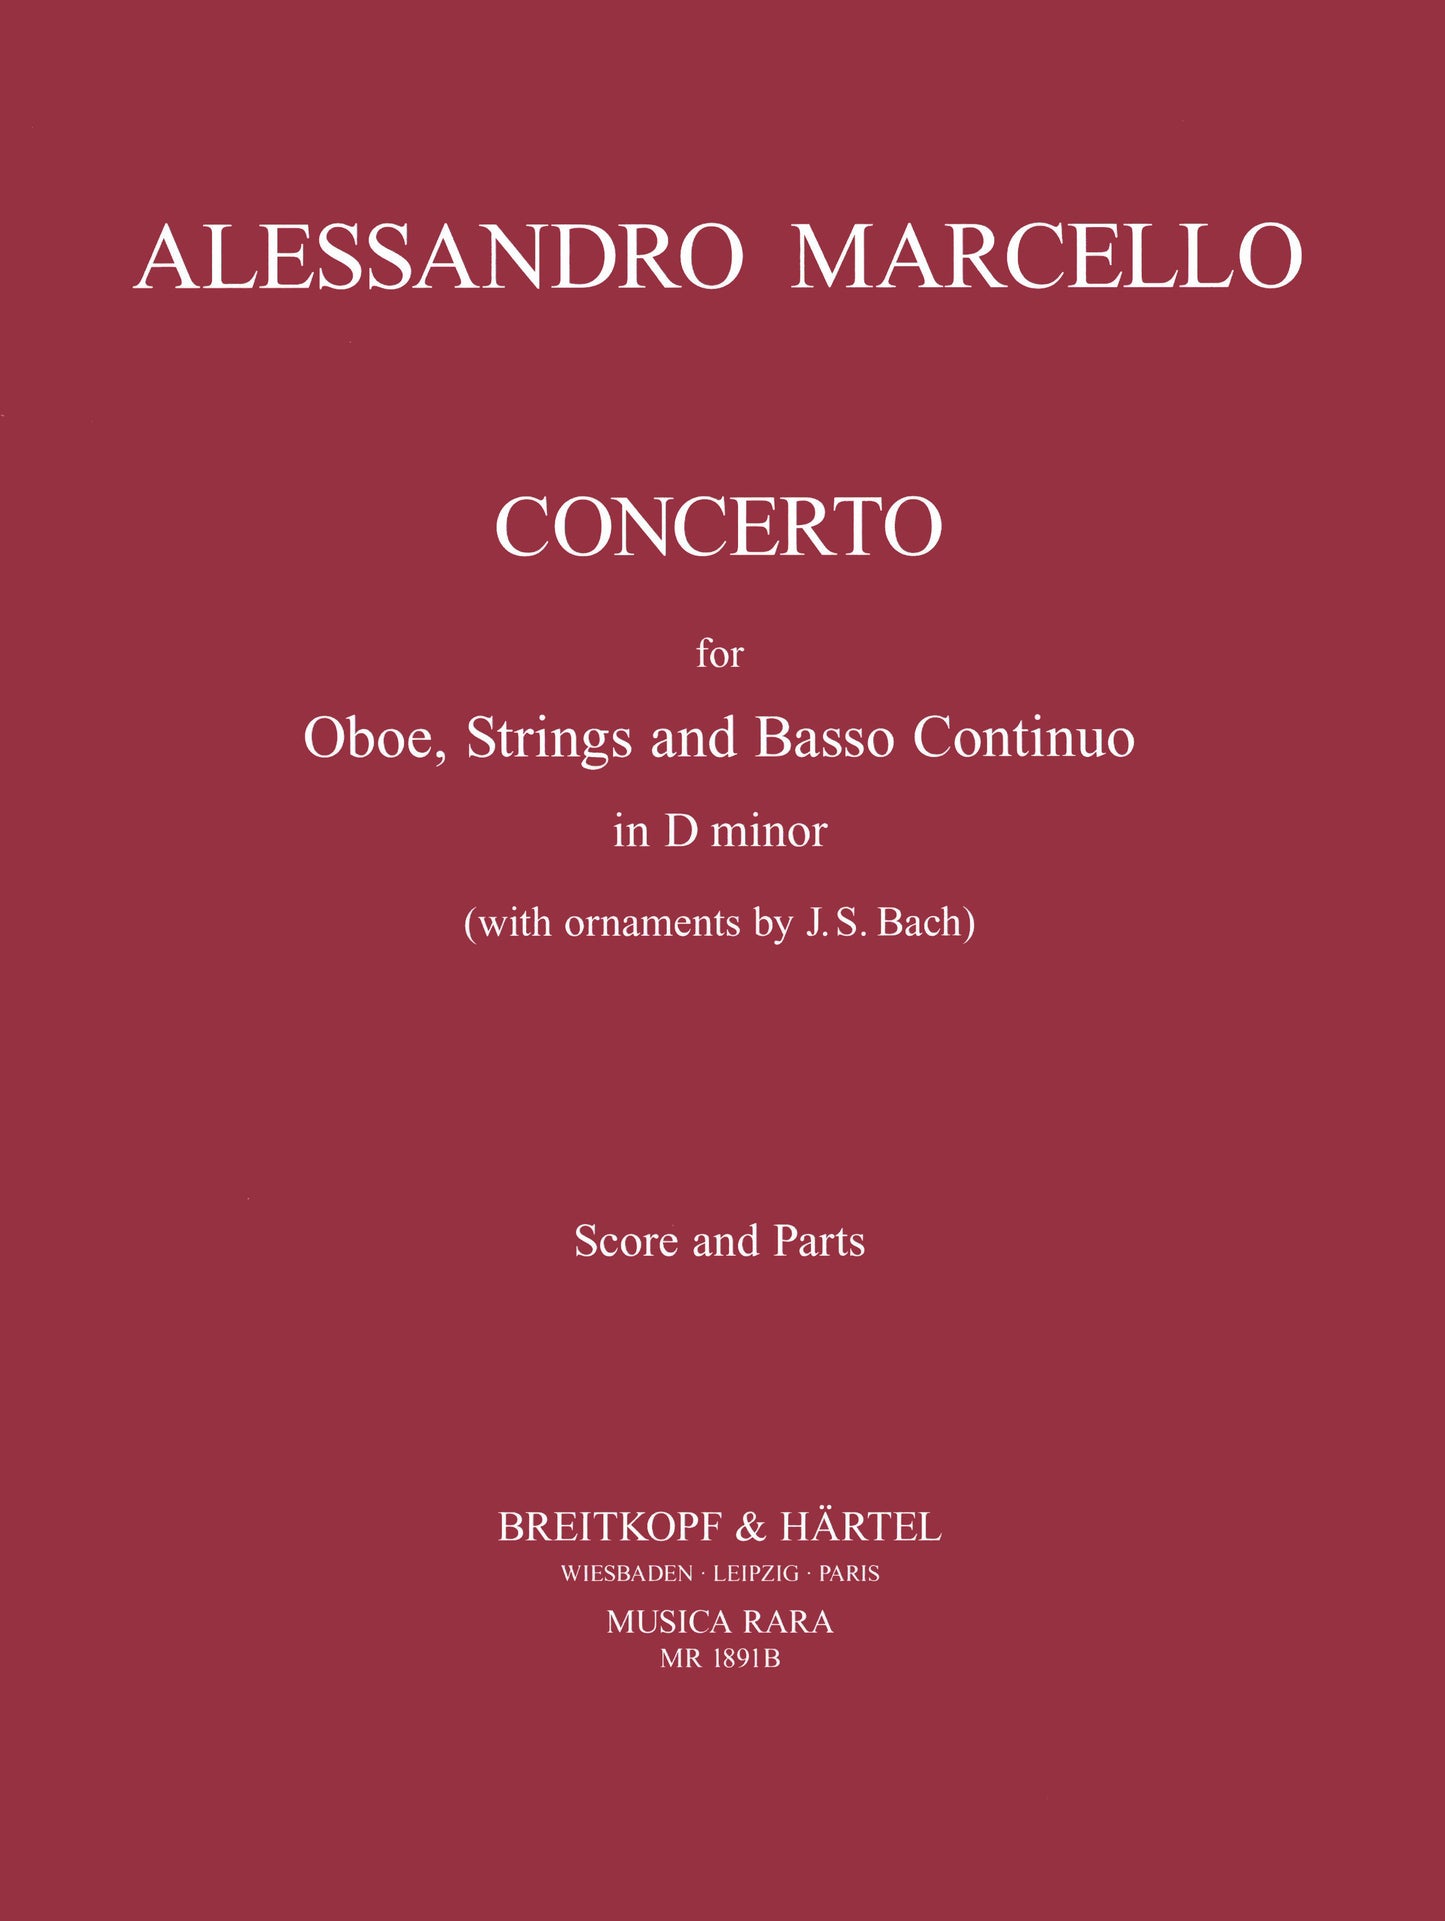 Marcello Oboe Concerto d min Sc&Pts MR